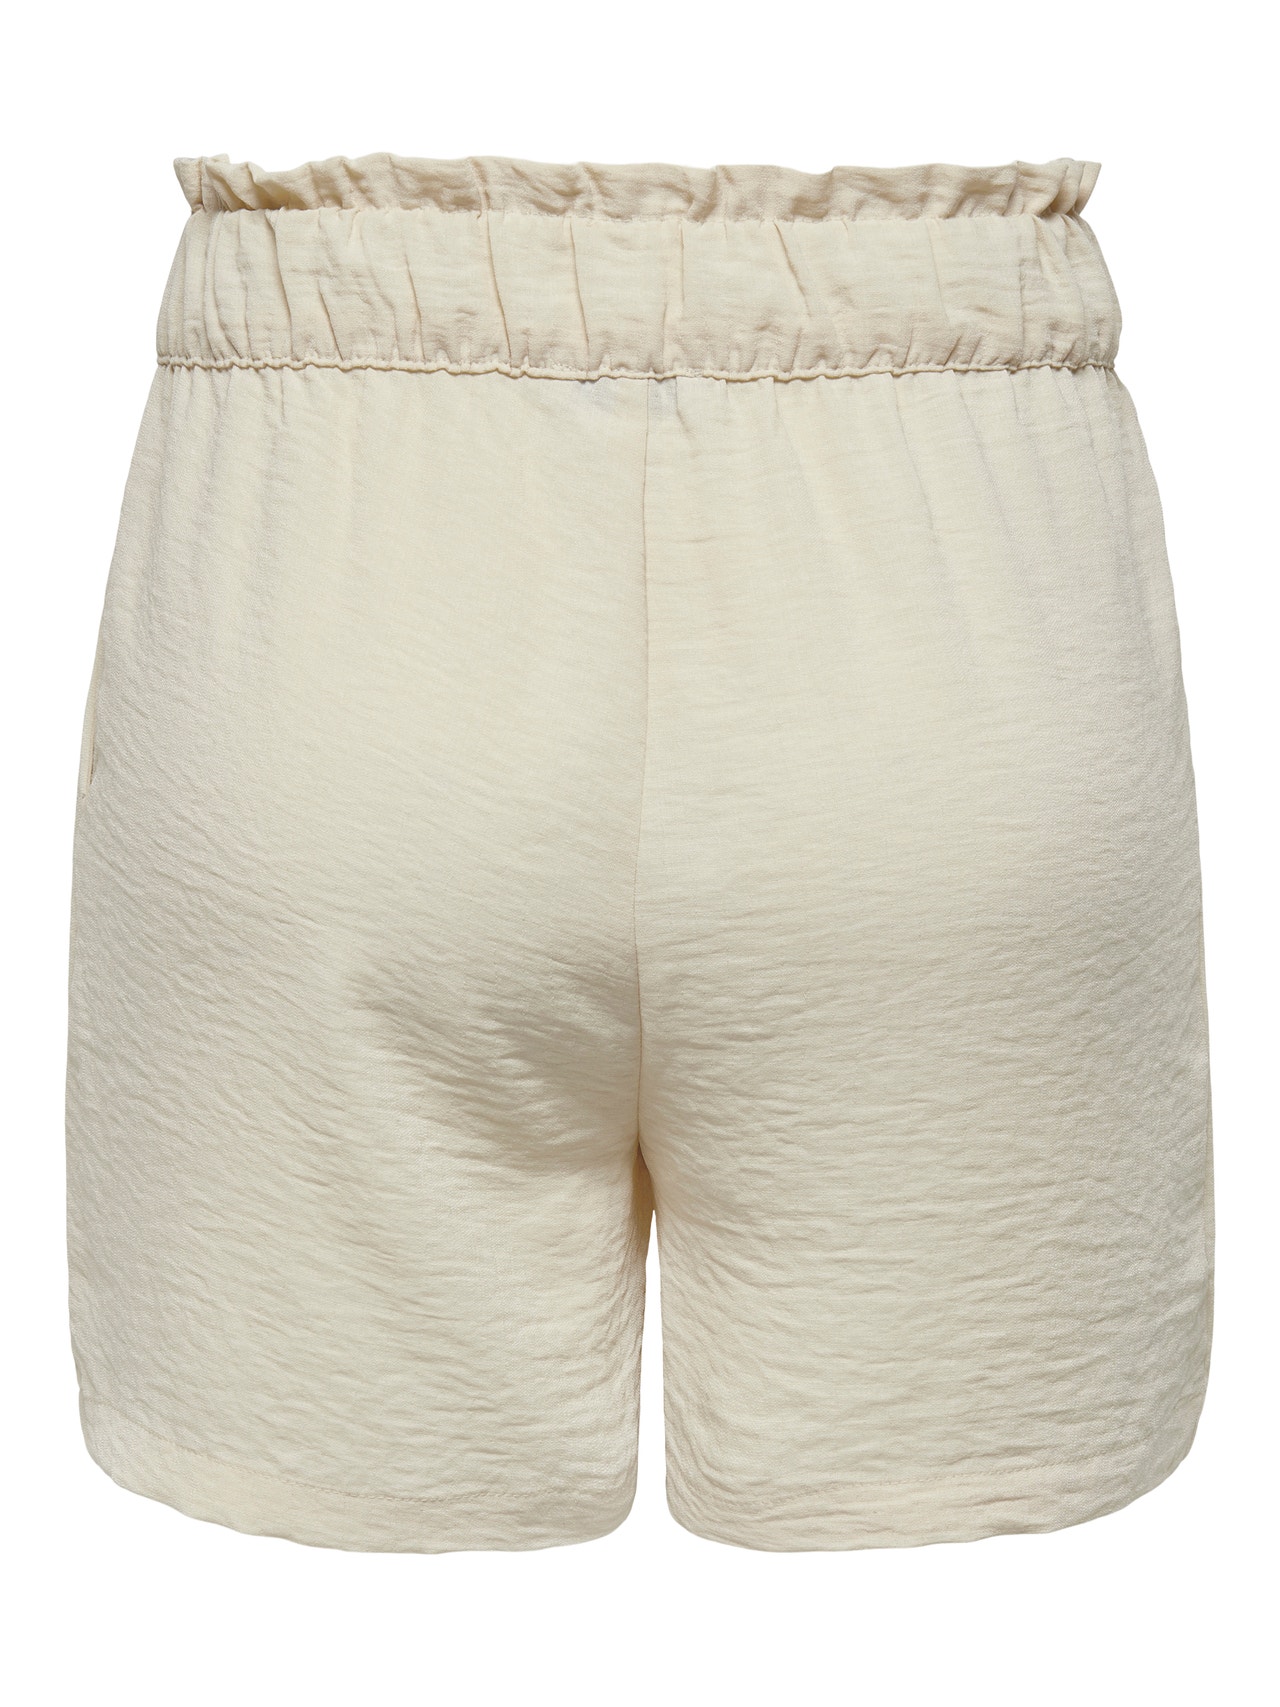 ONLY Regular Fit High waist Shorts -Sandshell - 15254848